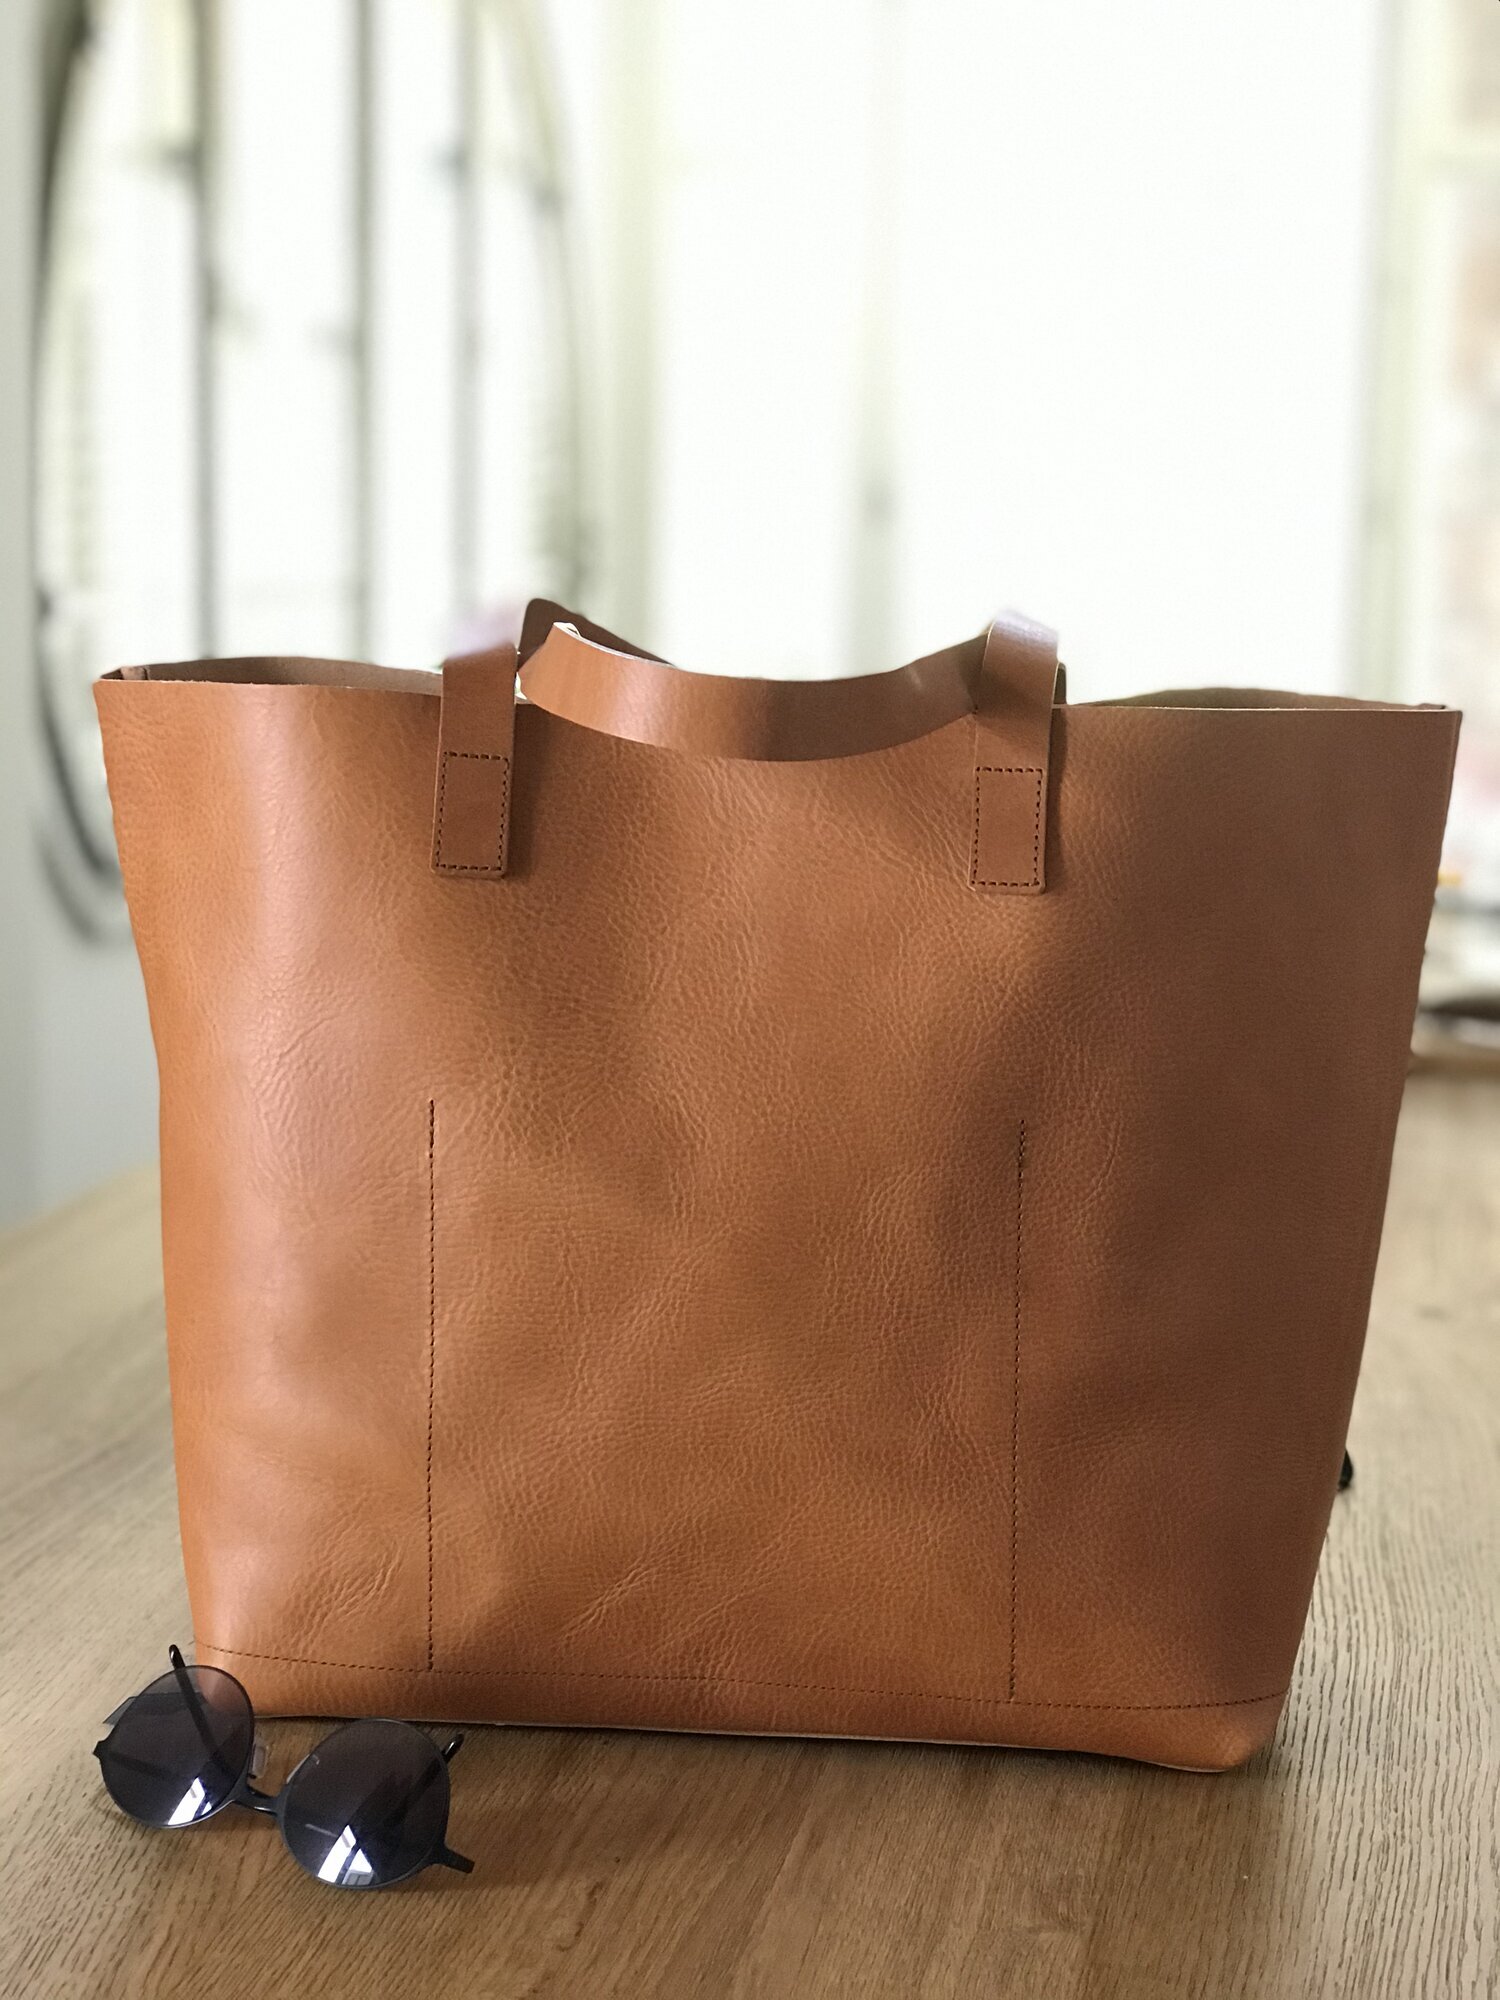 راهنمای جامع انتخاب و خرید کیف چرمی مناسب